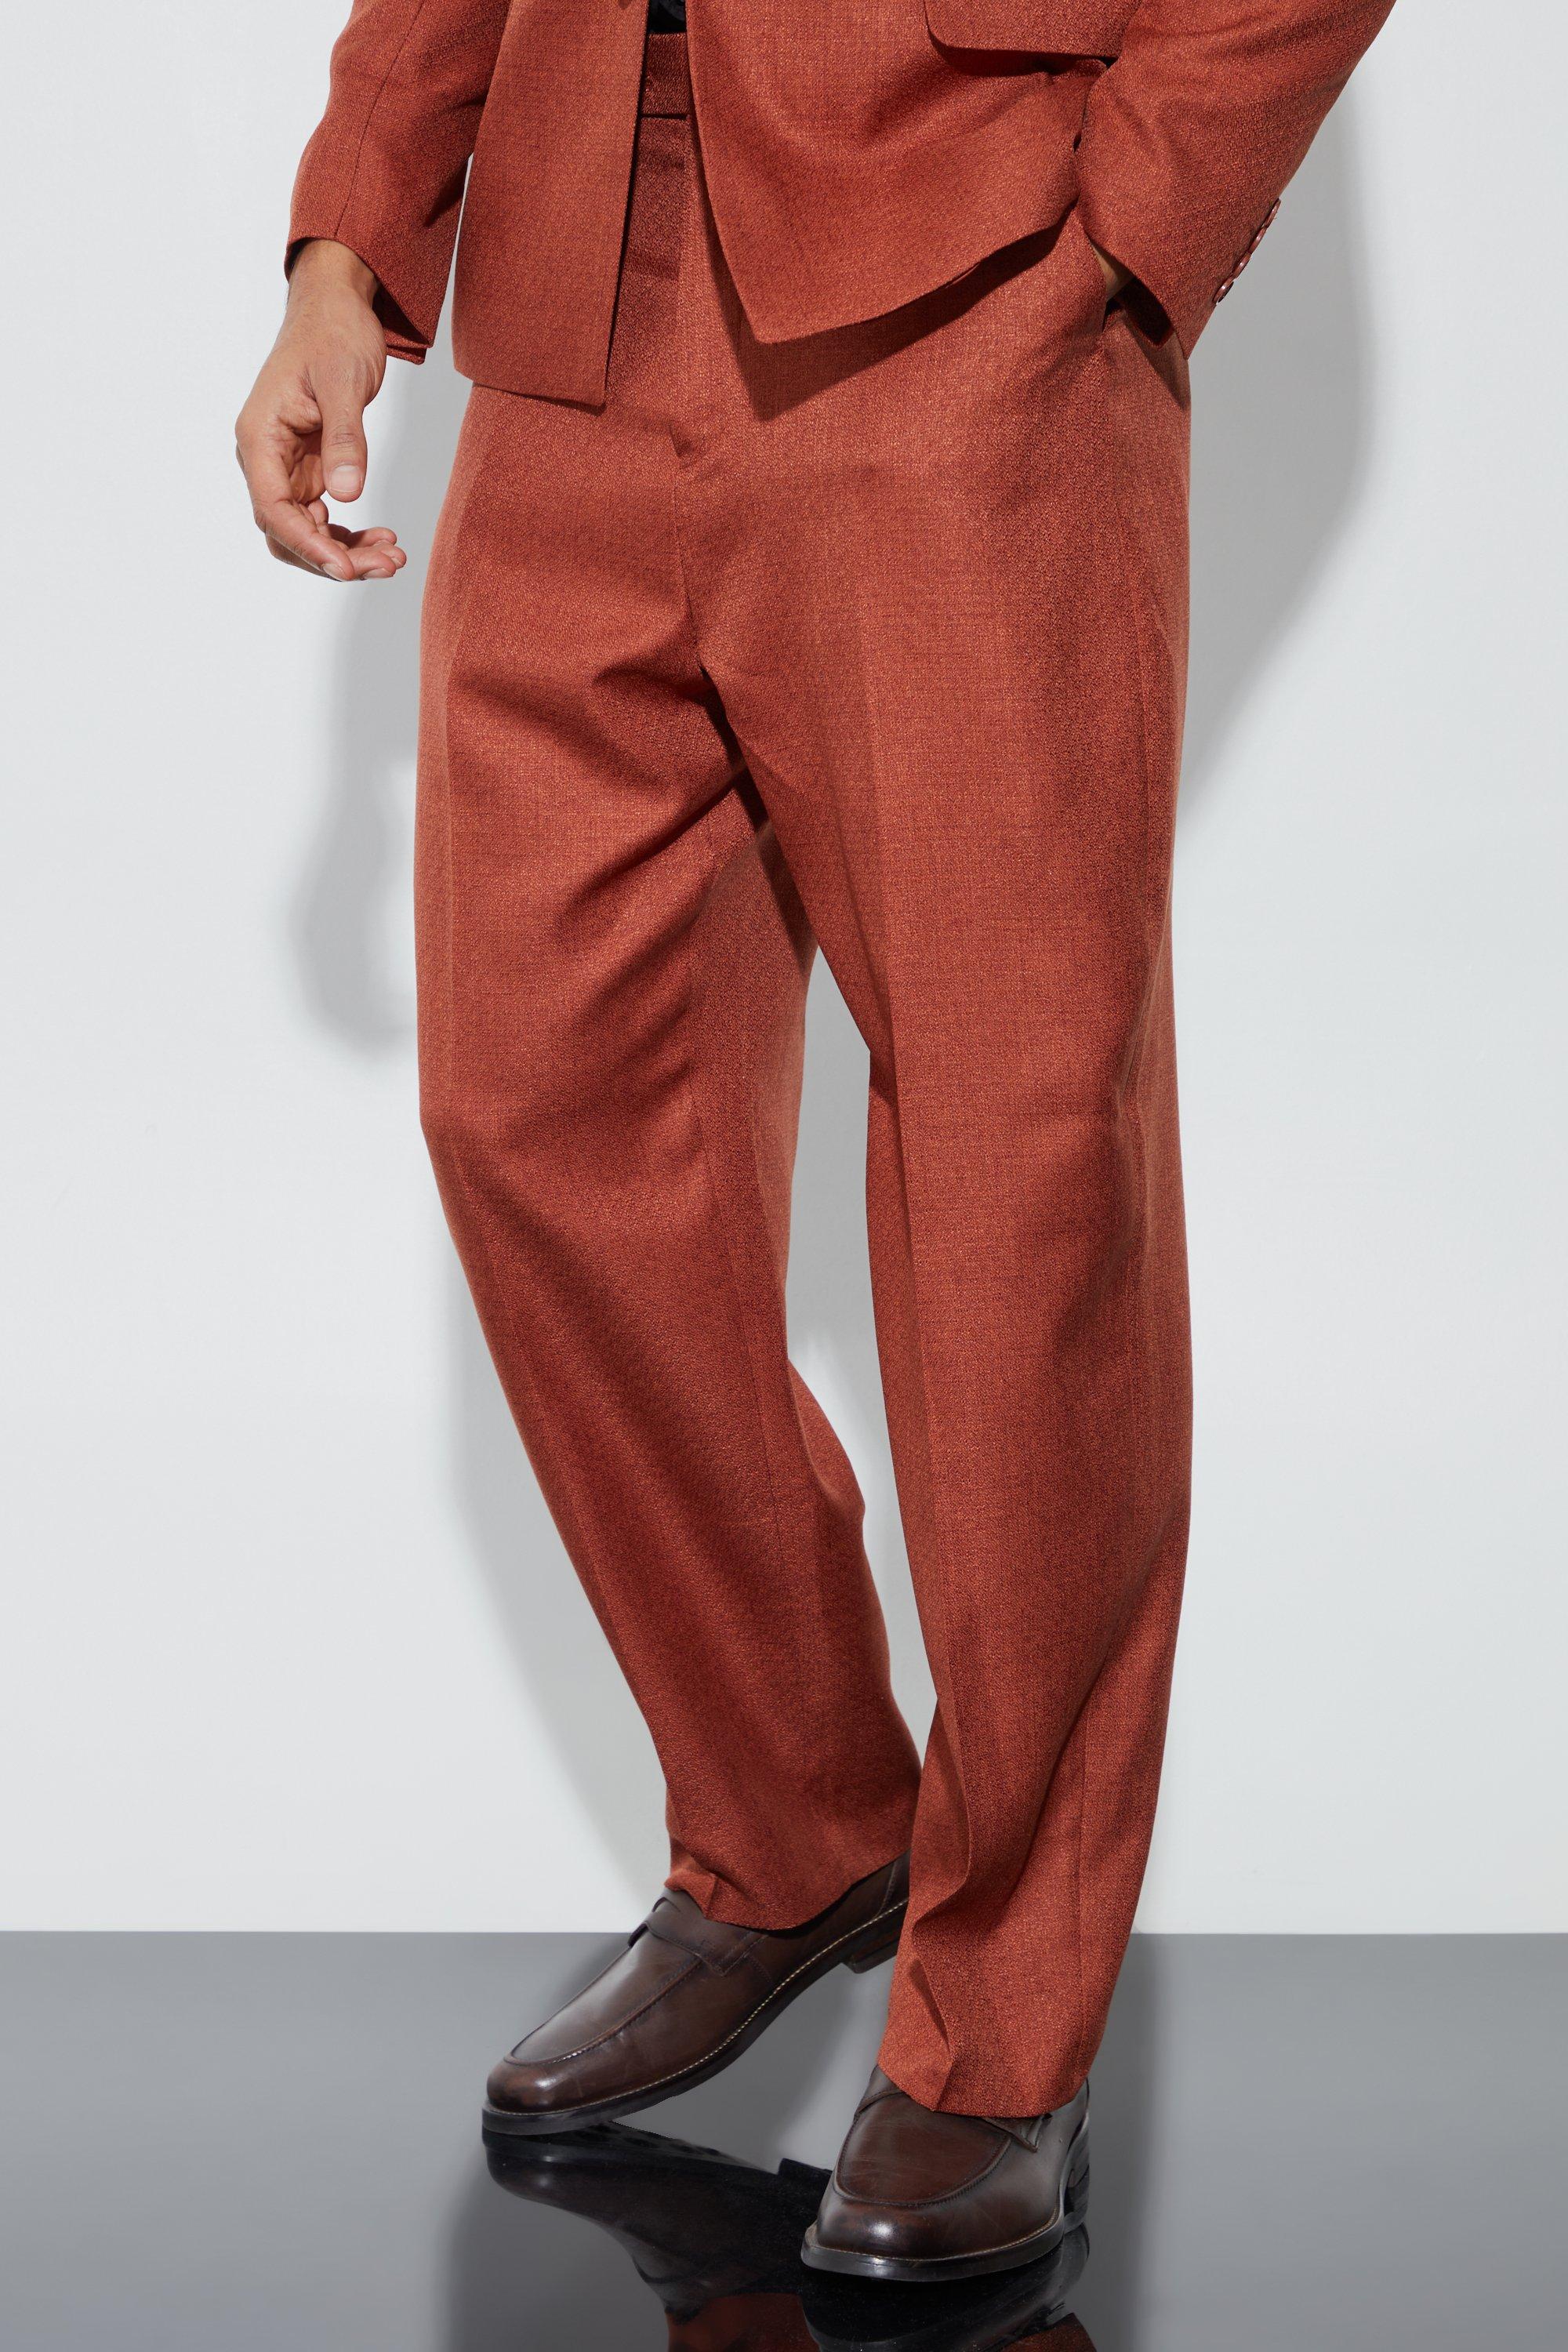 pantalon de costume large texturé homme - orange - 28, orange